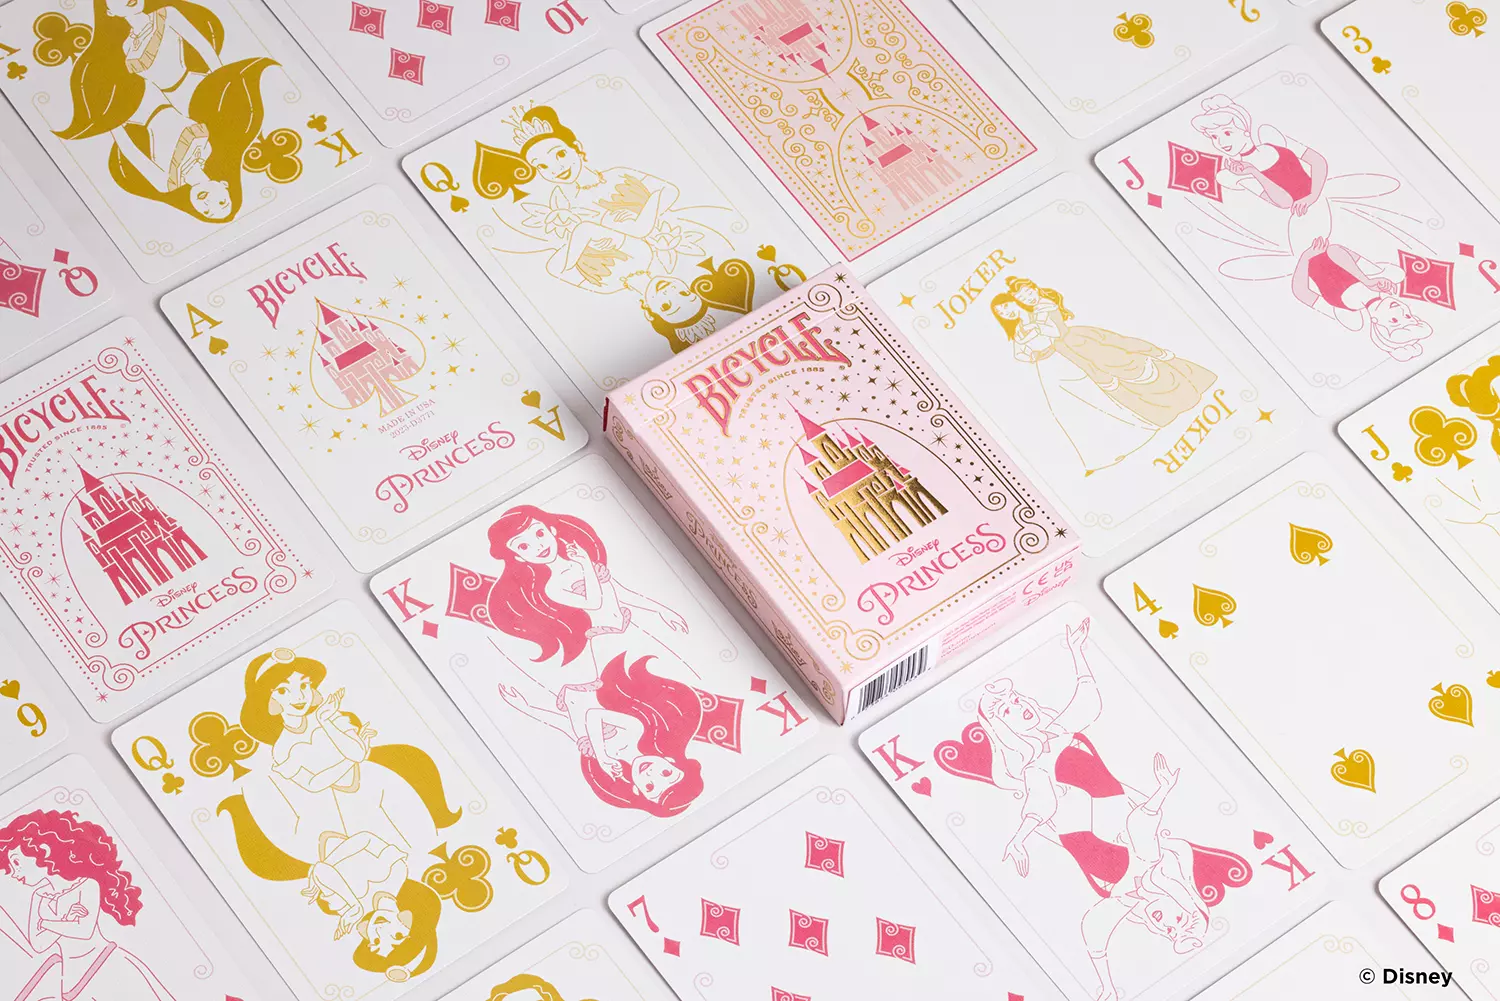 Die Karten einer Bicycle Ultimate Bicycle Disney Princess pink rosa Kartenschachtel liegen ausgebreitet auf einer Fläche sodass man verschieden Vorderseiten und Rückseiten und die Schachtel sehen kann.